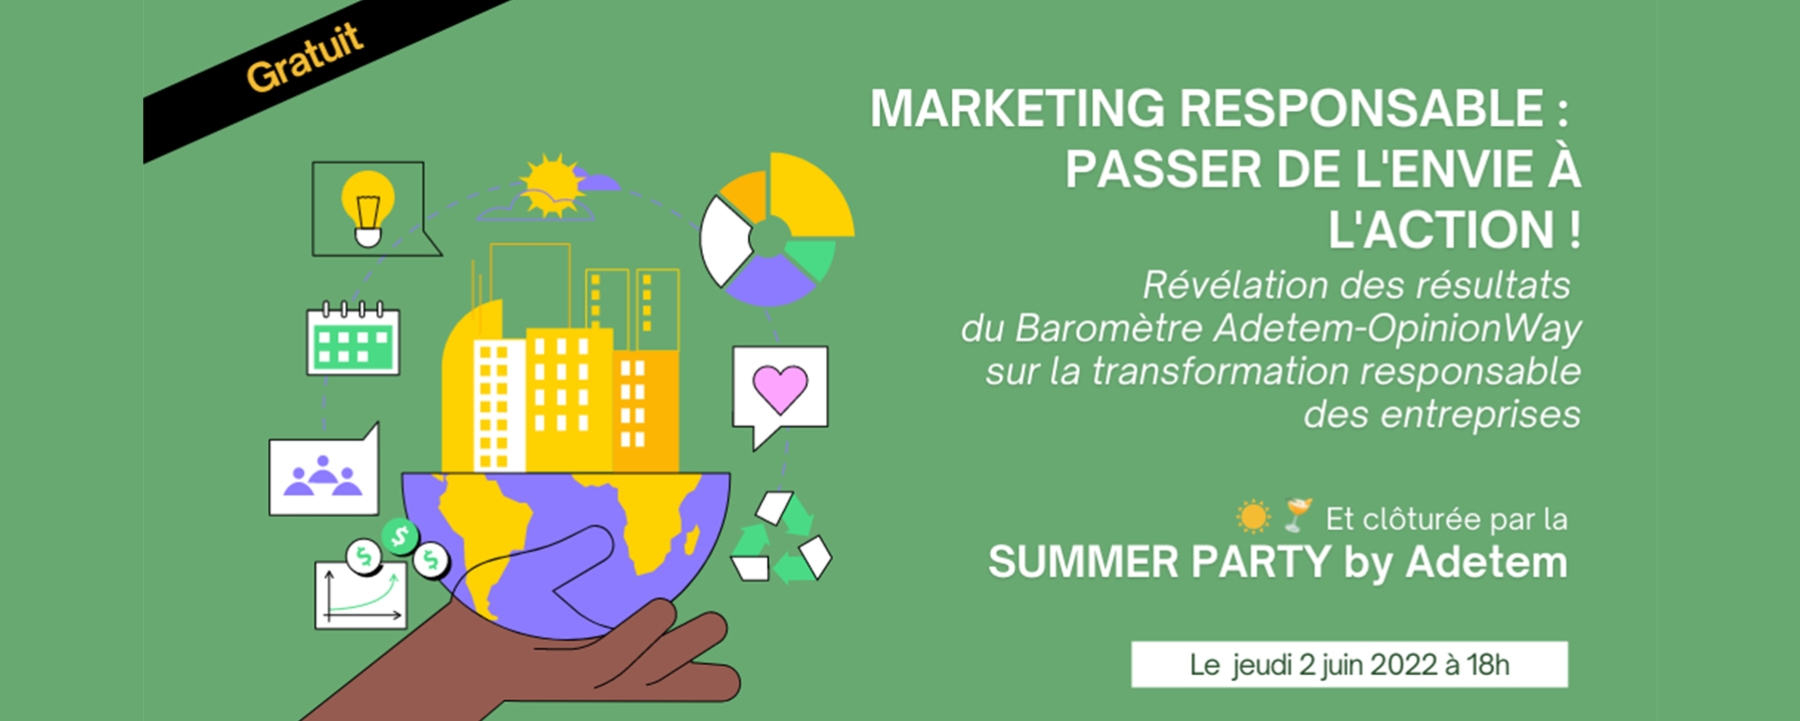 Marketing Responsable : Passer de l’envie à l’action ! – Summer Party